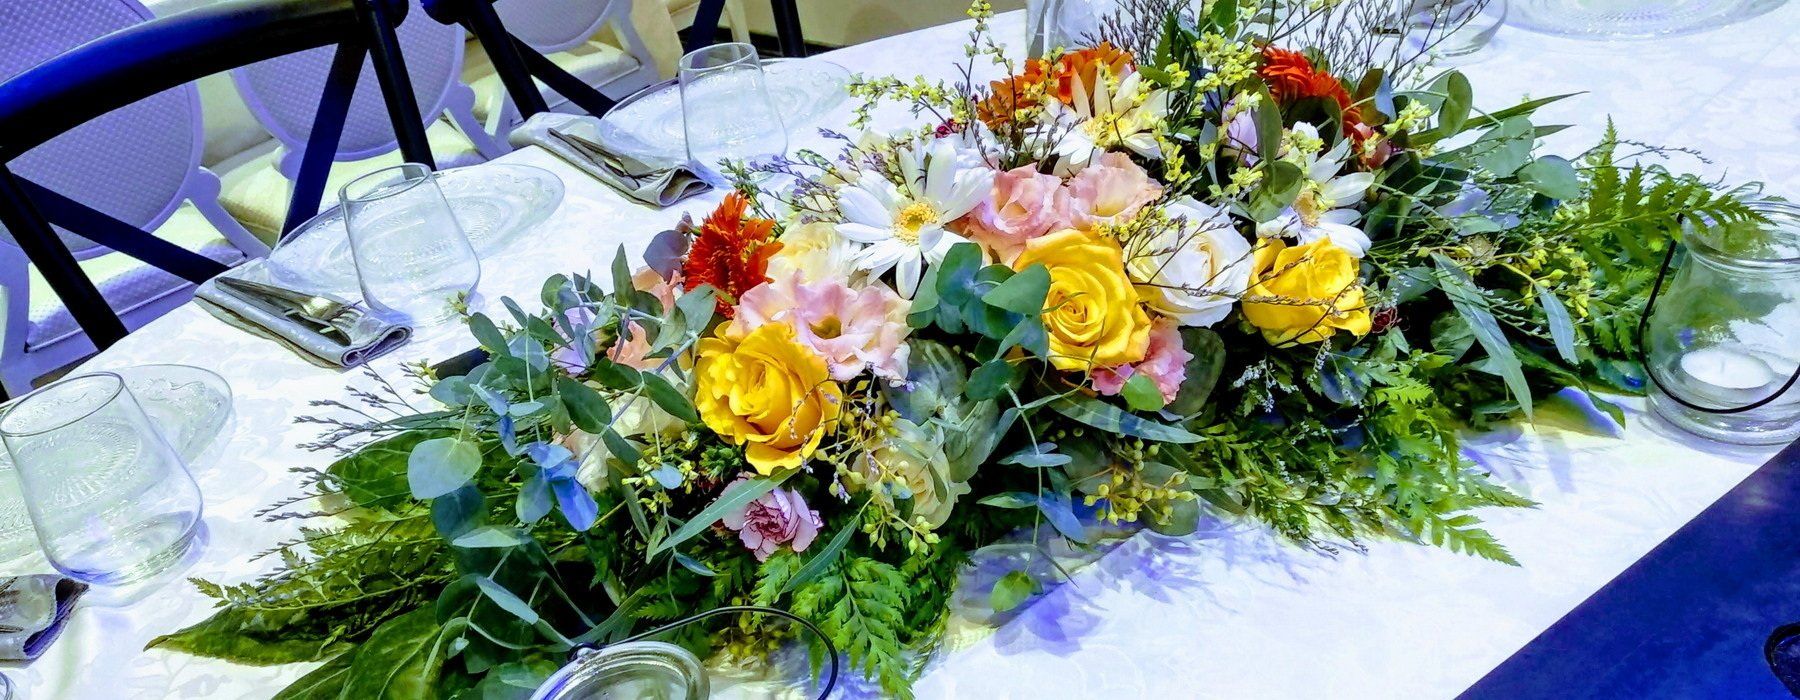 סידורי שולחן בפרחים